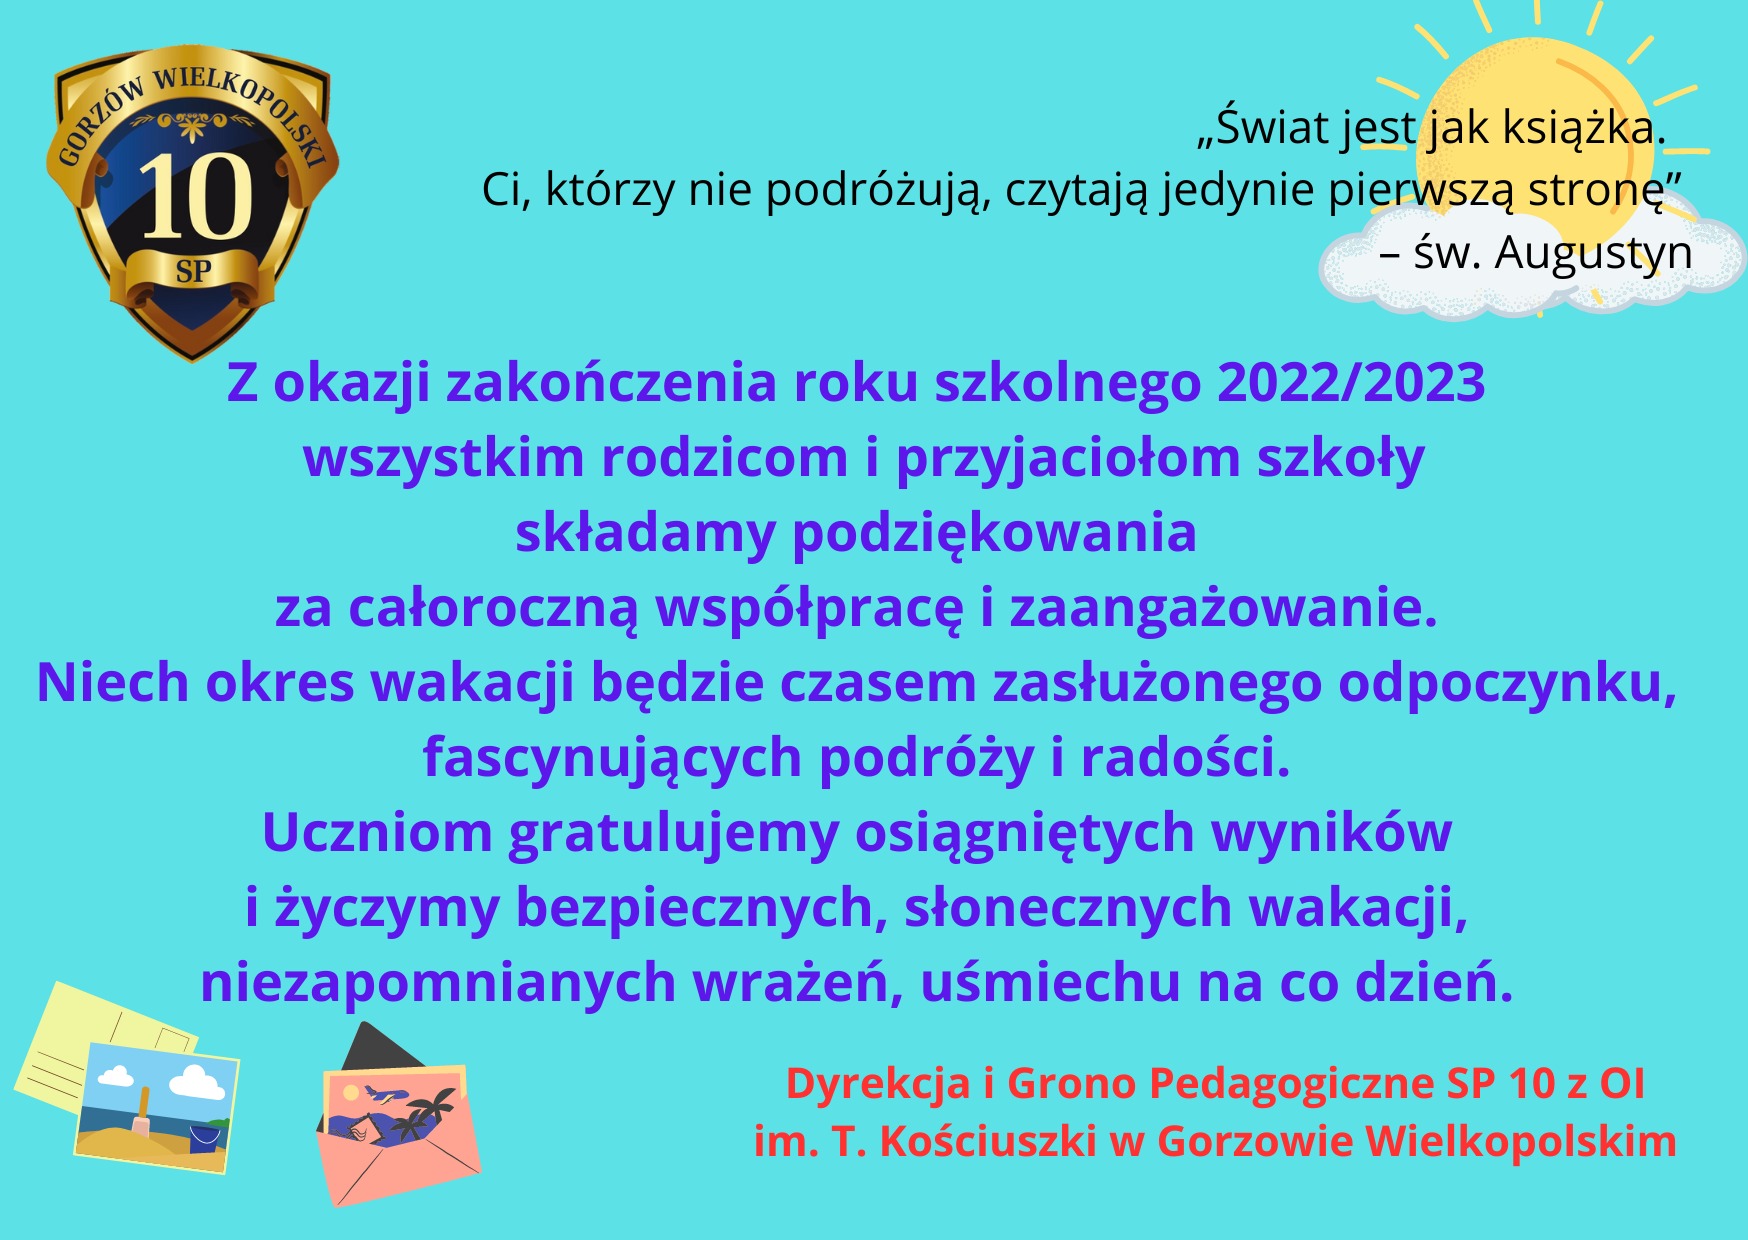 Życzenia na zakończenie roku szkolnego 2022/2023 - Obrazek 1